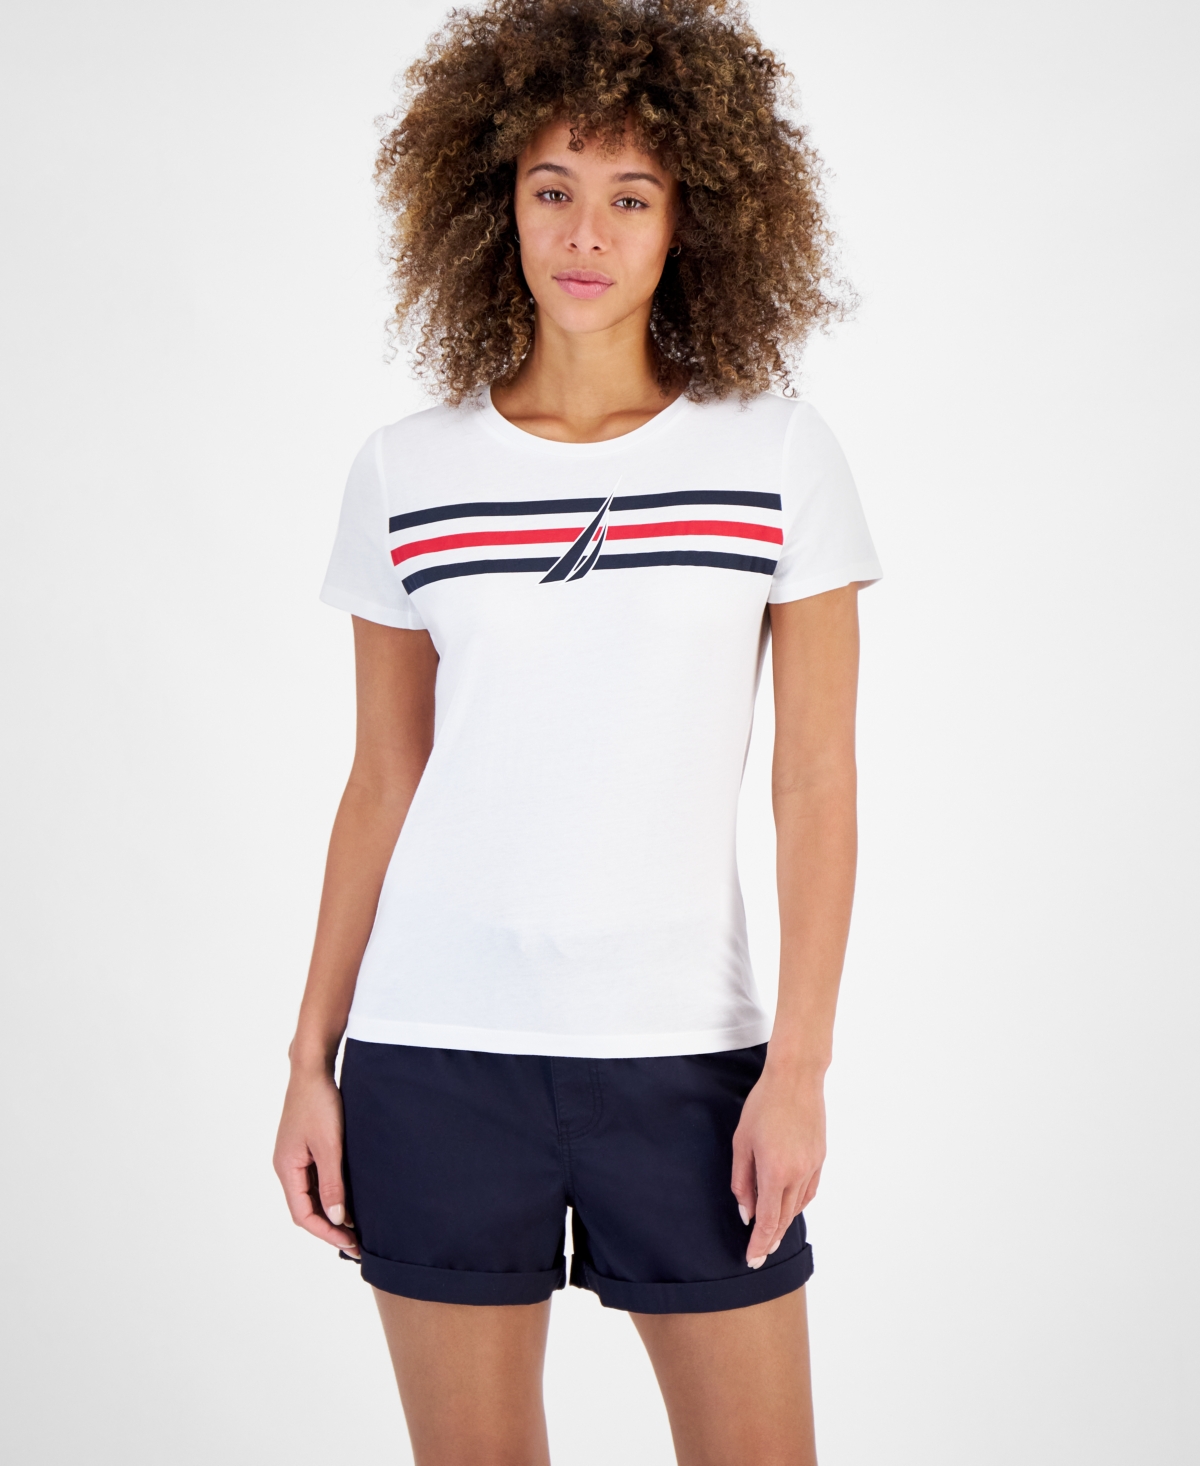 Women's Sailboat Stripe Graphic T-Shirt - Bright White